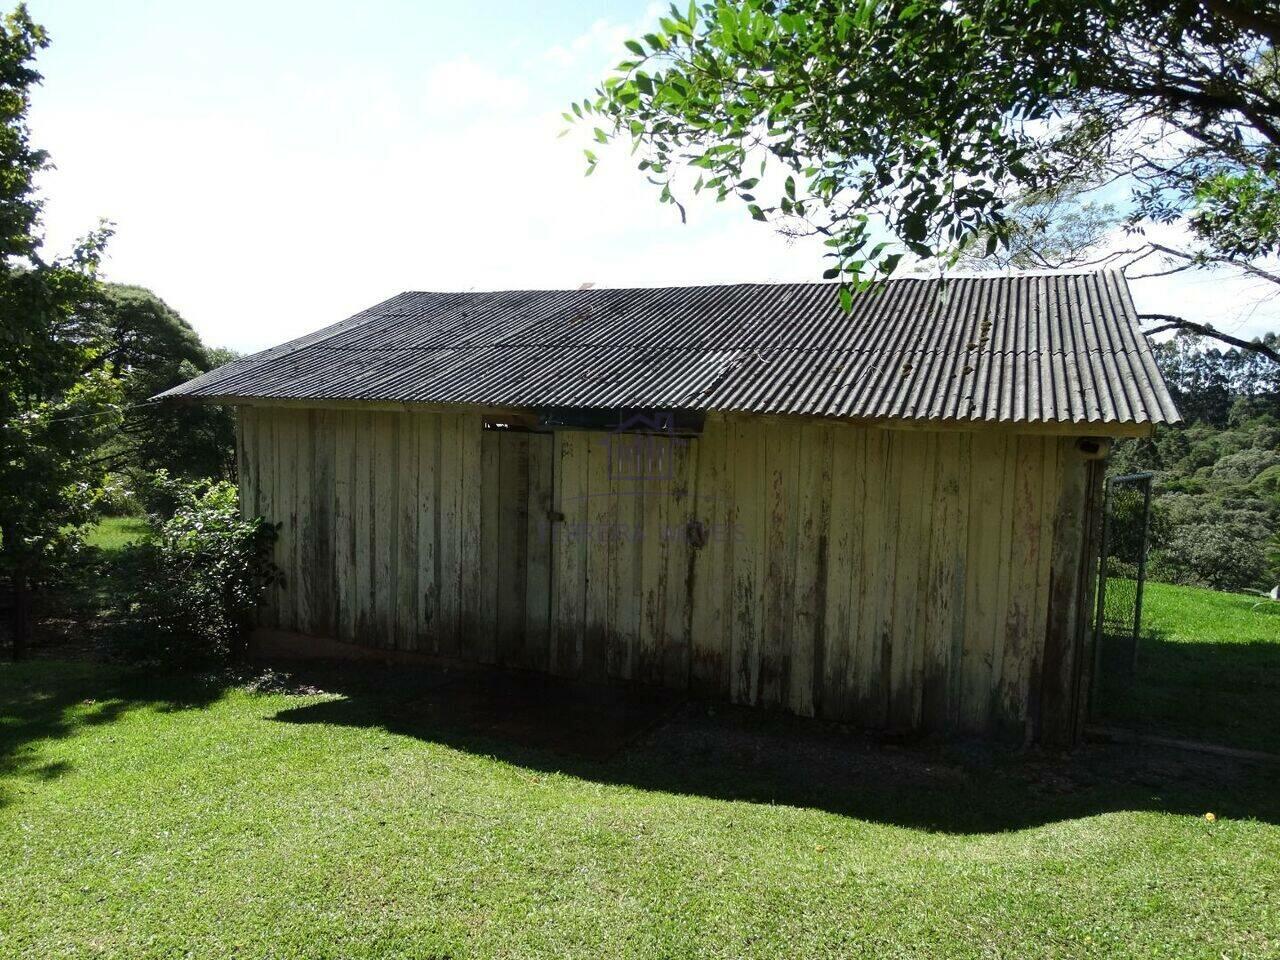 Chácara Area Rural, São José dos Pinhais - PR